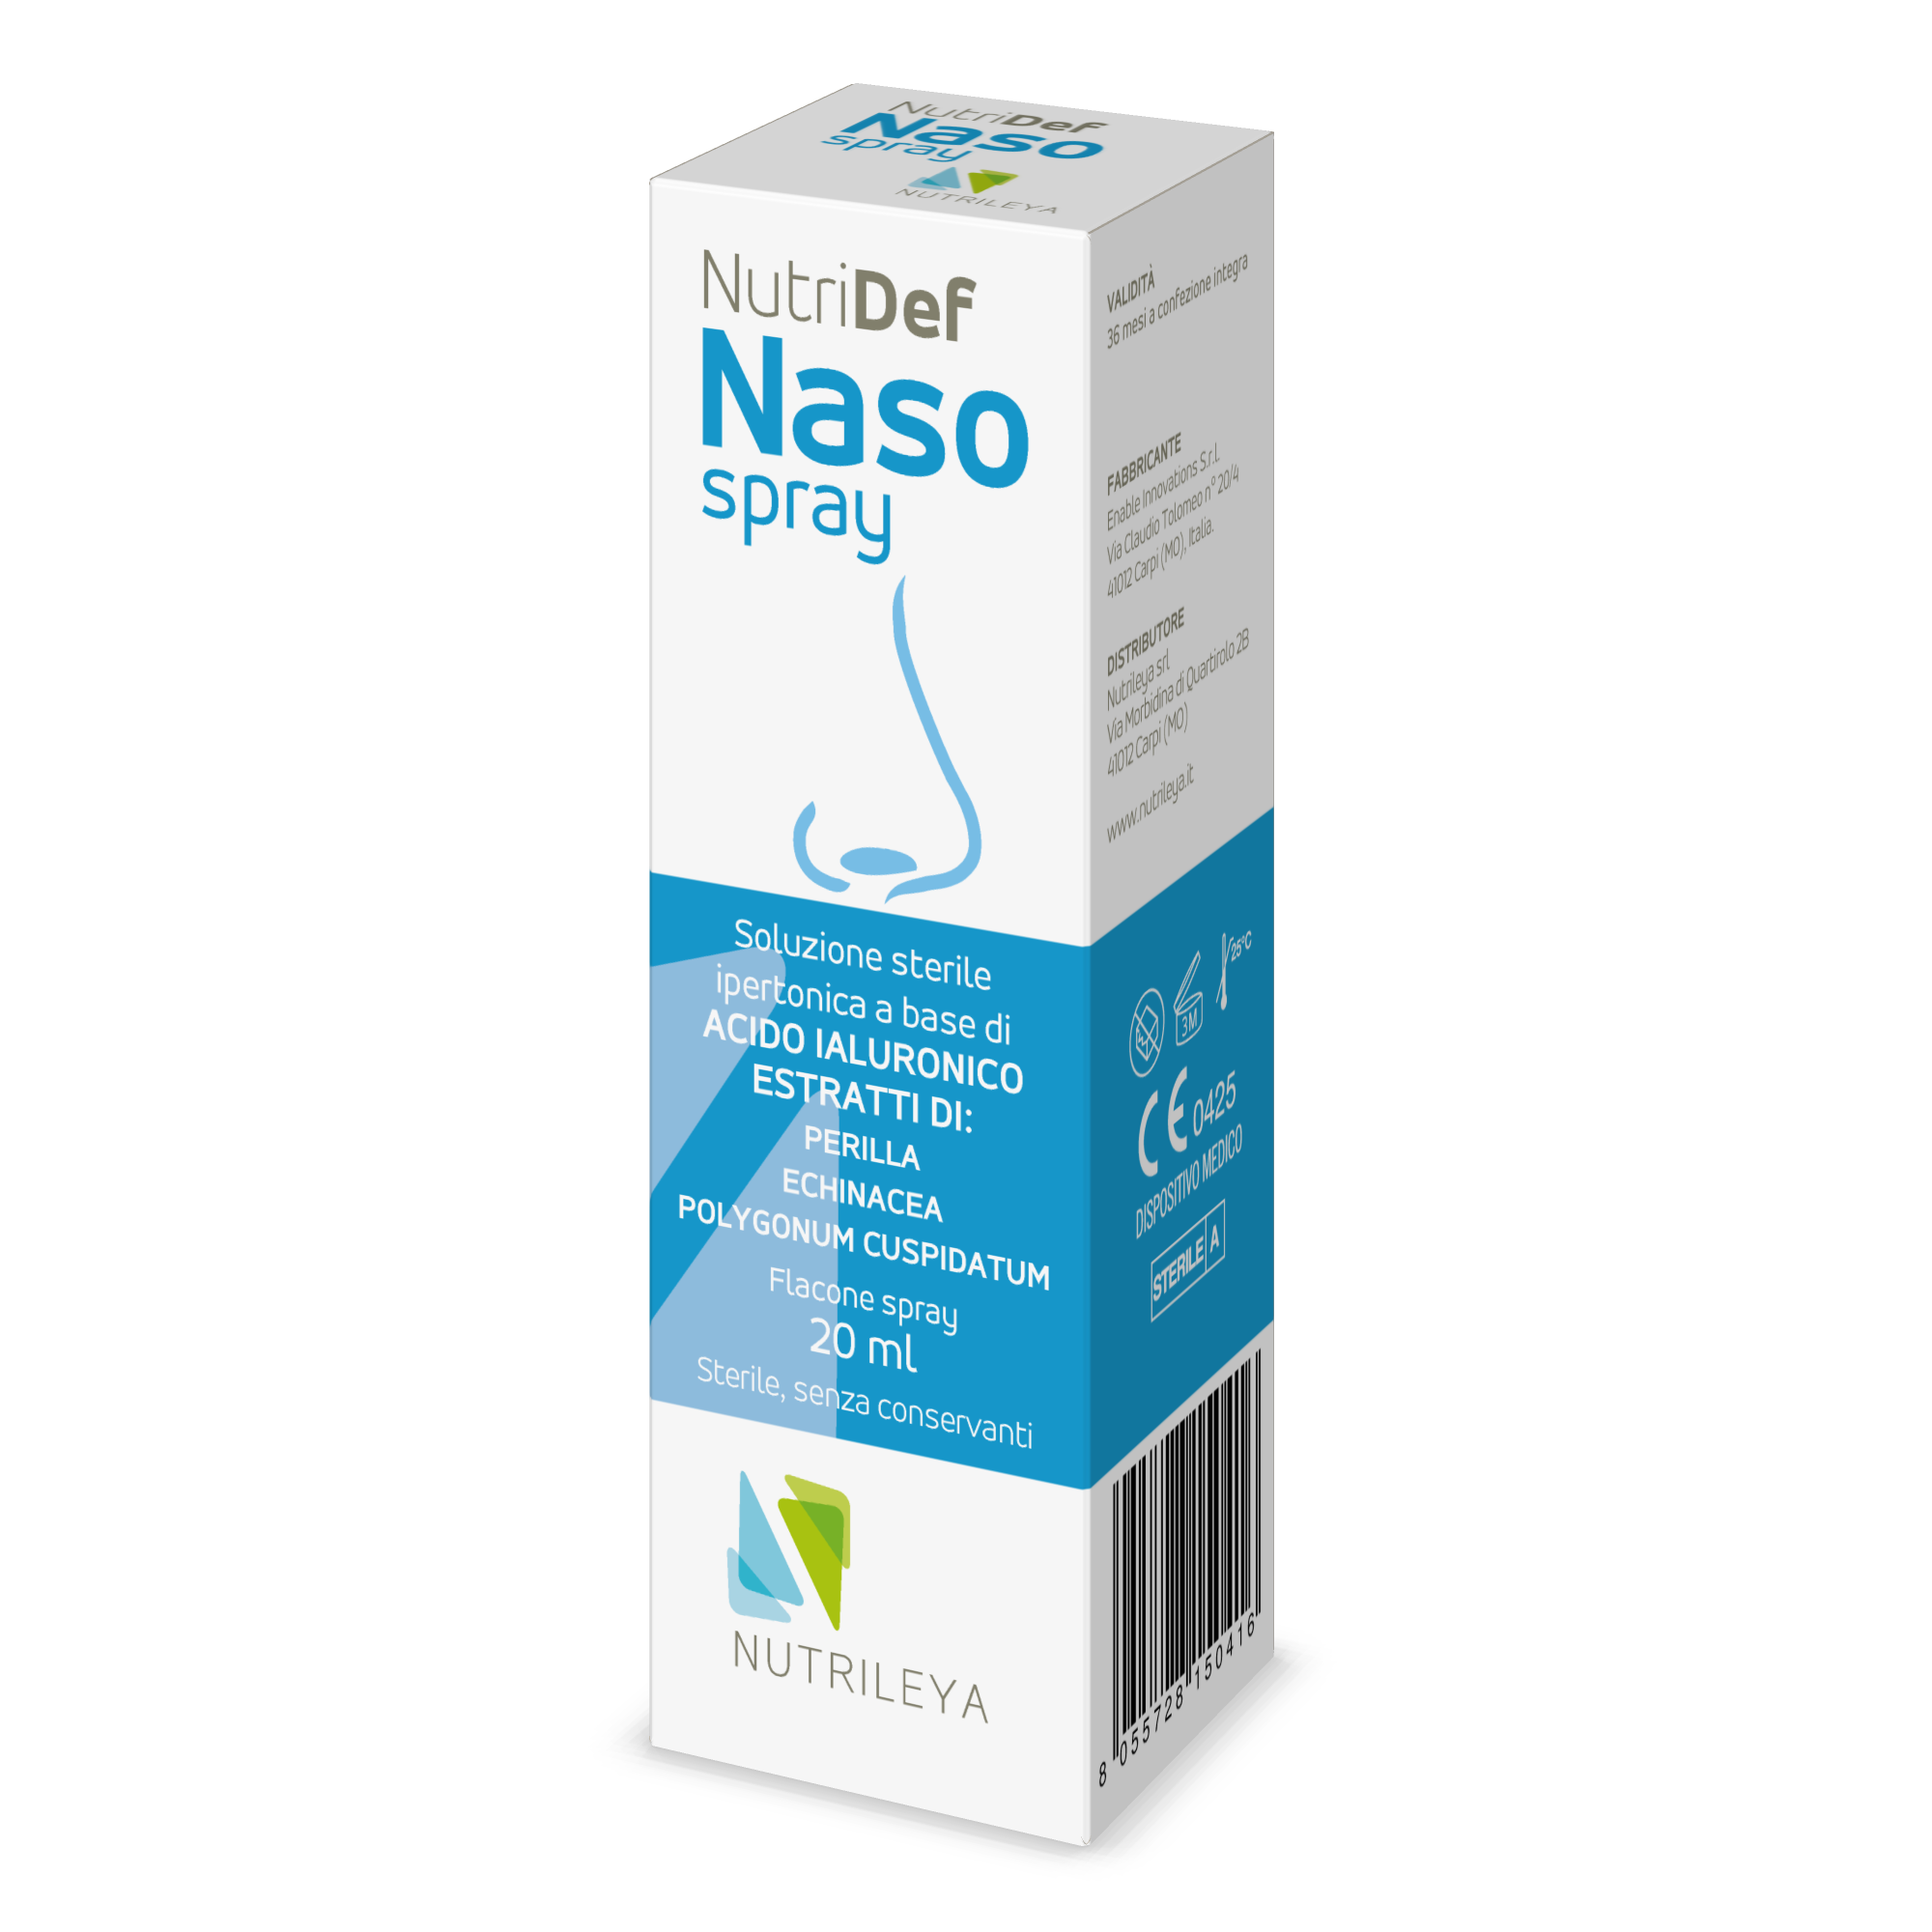 Nutridef Naso Spray, 20ml, Nutrileya